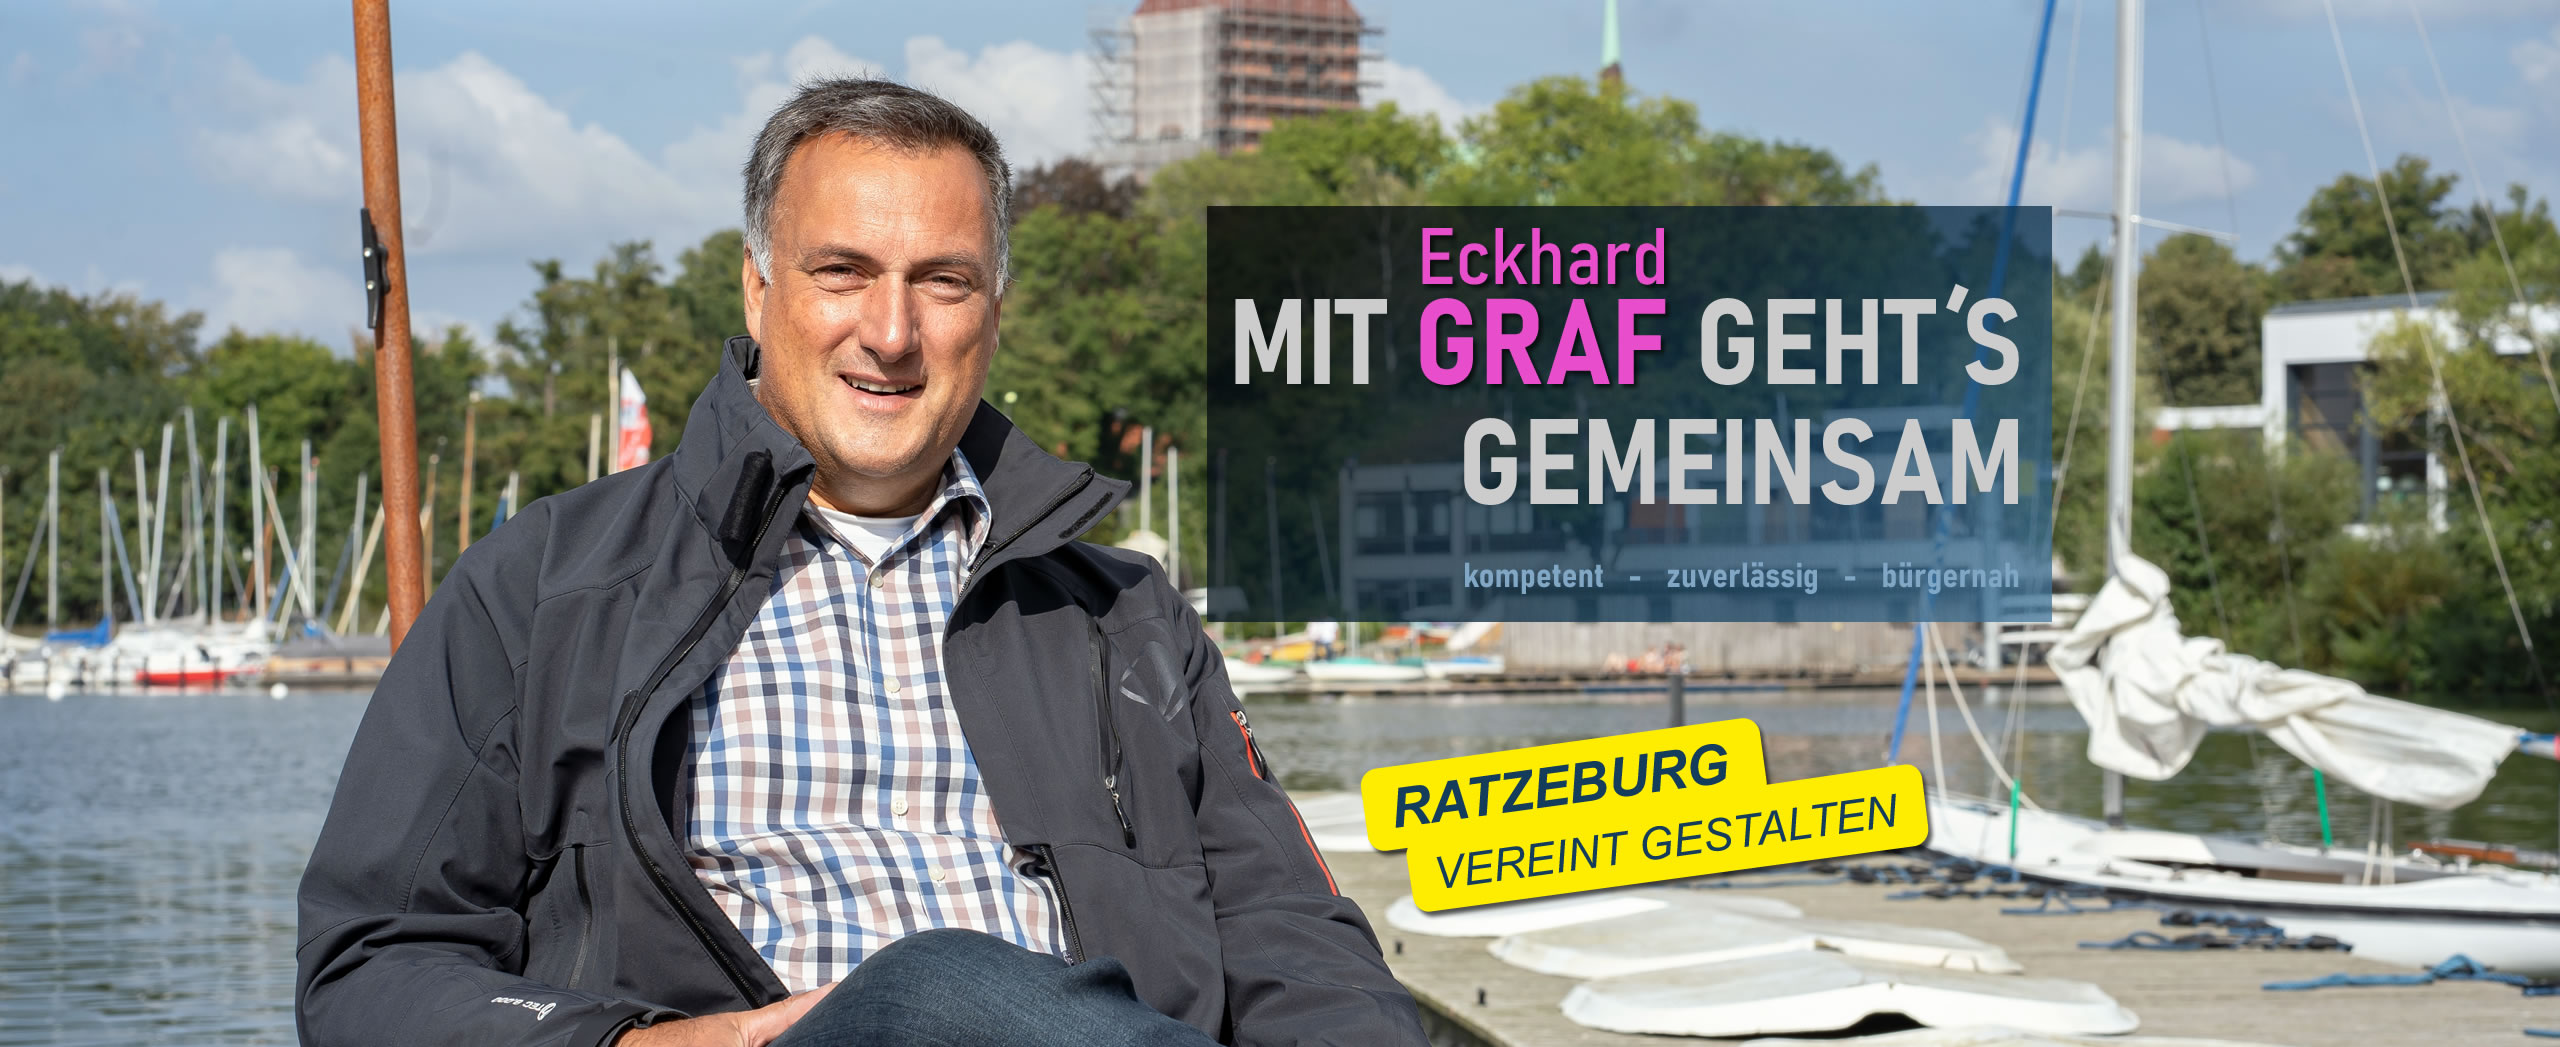 Ratzeburg Bürgermeisterwahl Kandidat Graf